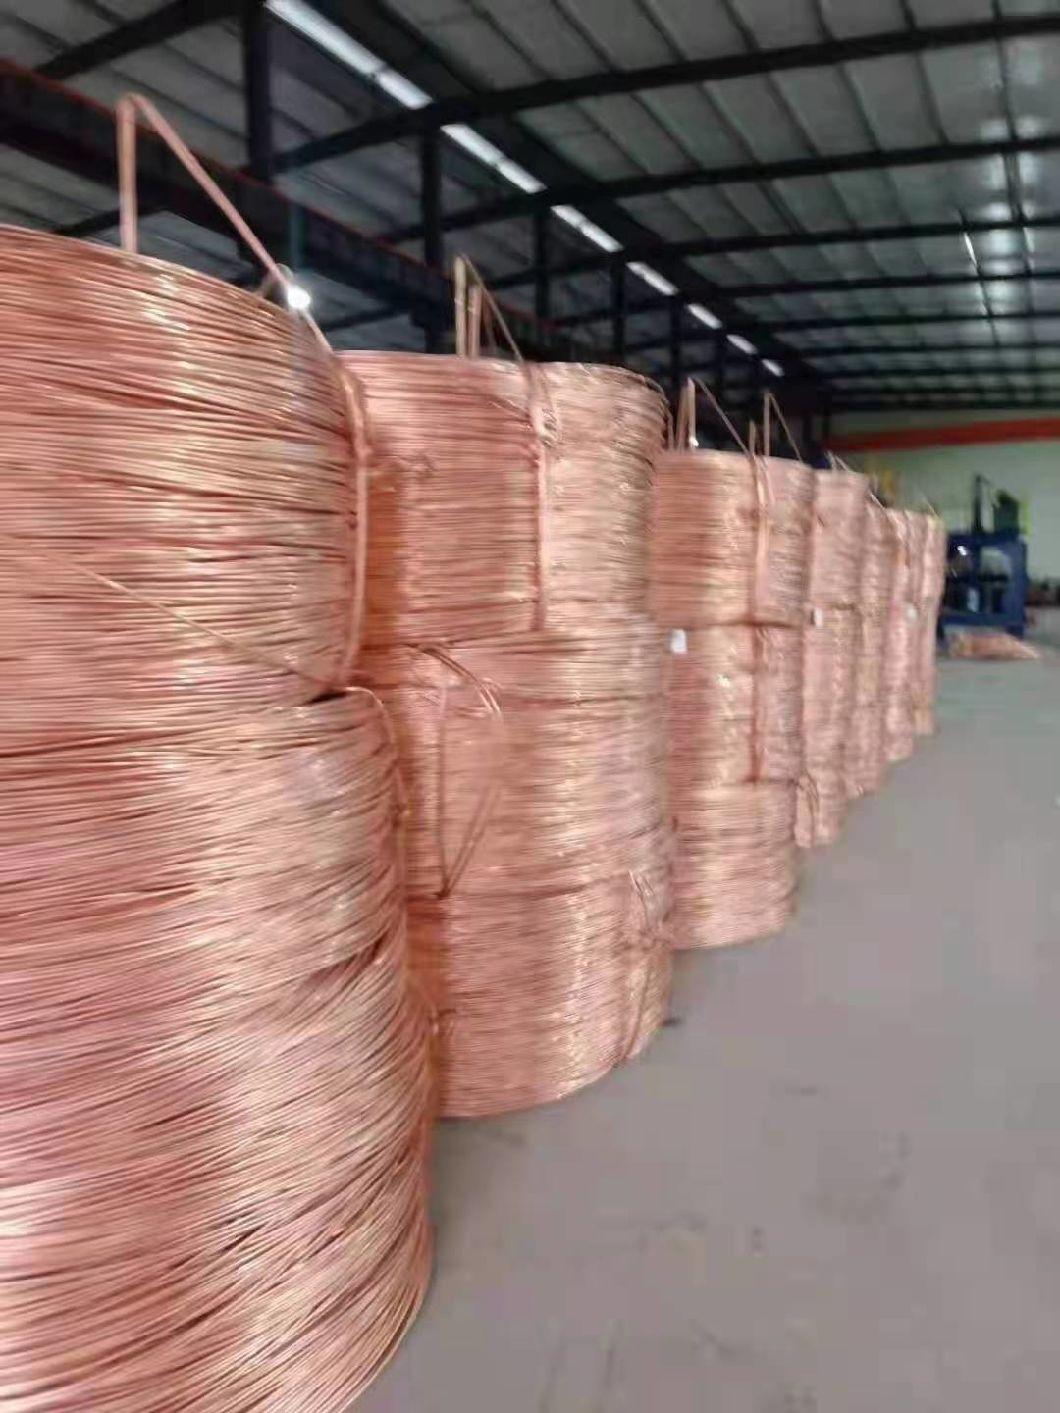 Good Thermal Conductivity Mk Wire Copper and Kovar Bimetallic Wire